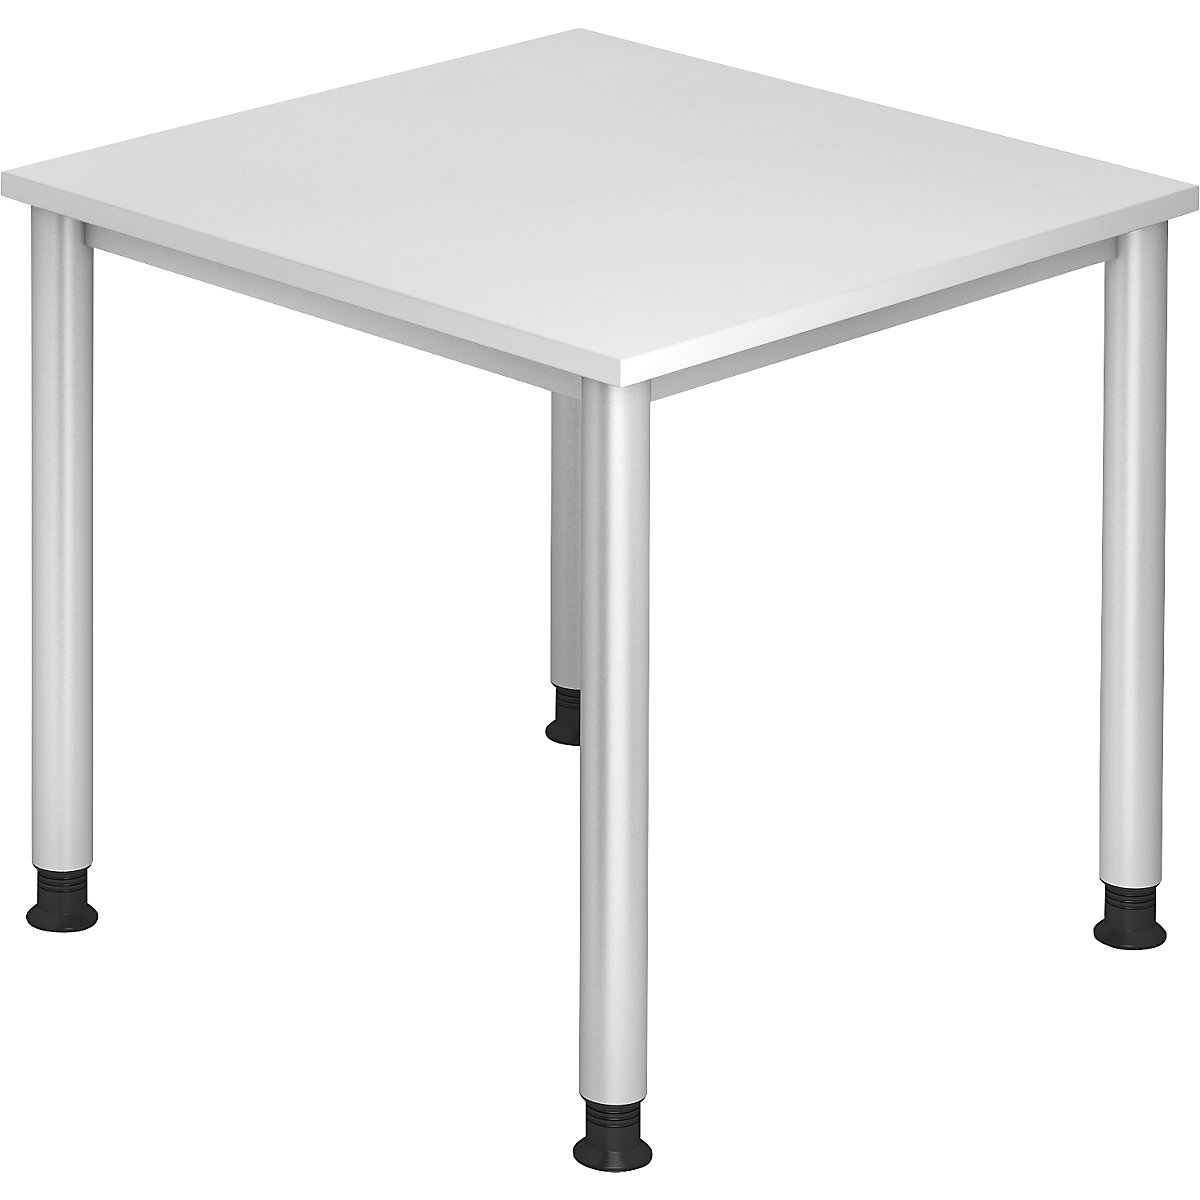 Pisalna miza, ŠxG 800 x 800 mm, 4 noge iz okroglih cevi, bela-6